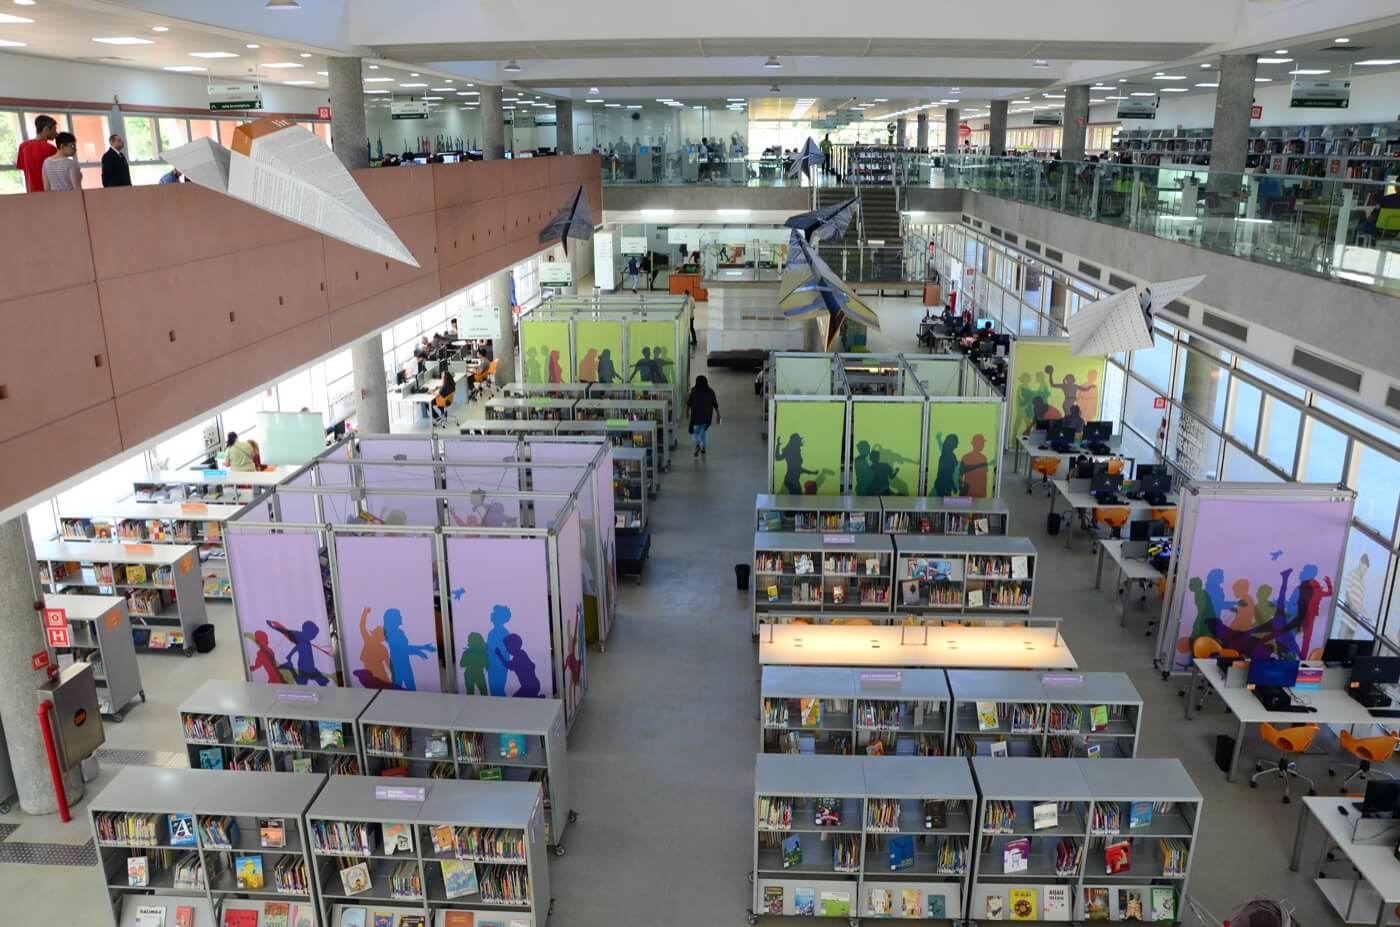 Biblioteca de São Paulo